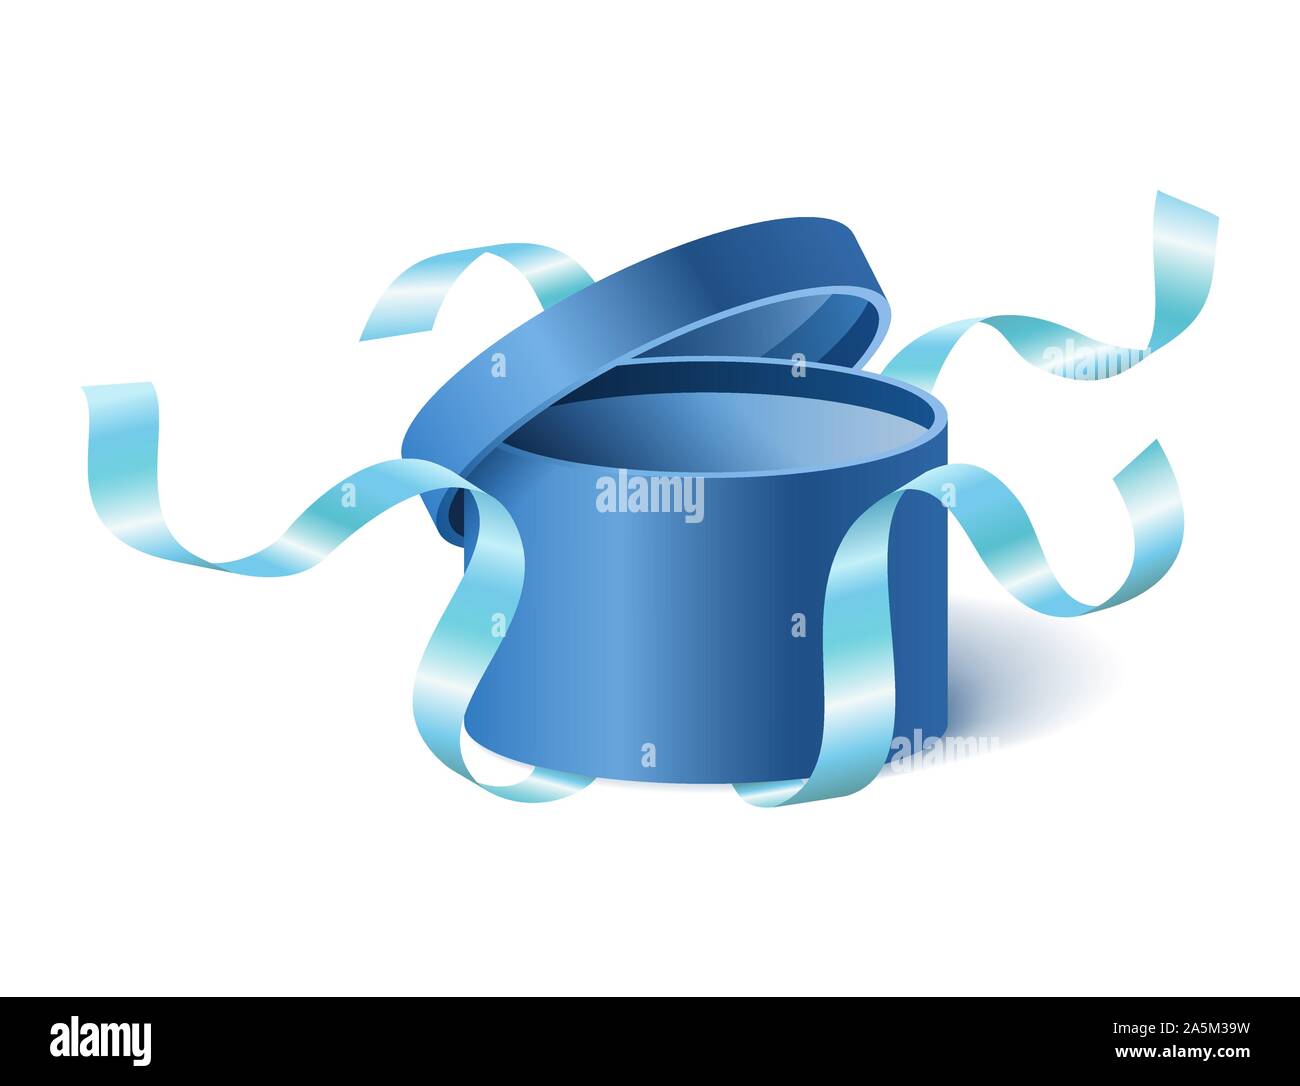 Blue aperto 3D realistici round confezione regalo con battenti fuori il coperchio e i nastri e il luogo per il vostro testo, casella realistico illustrazione vettoriale. Illustrazione Vettoriale